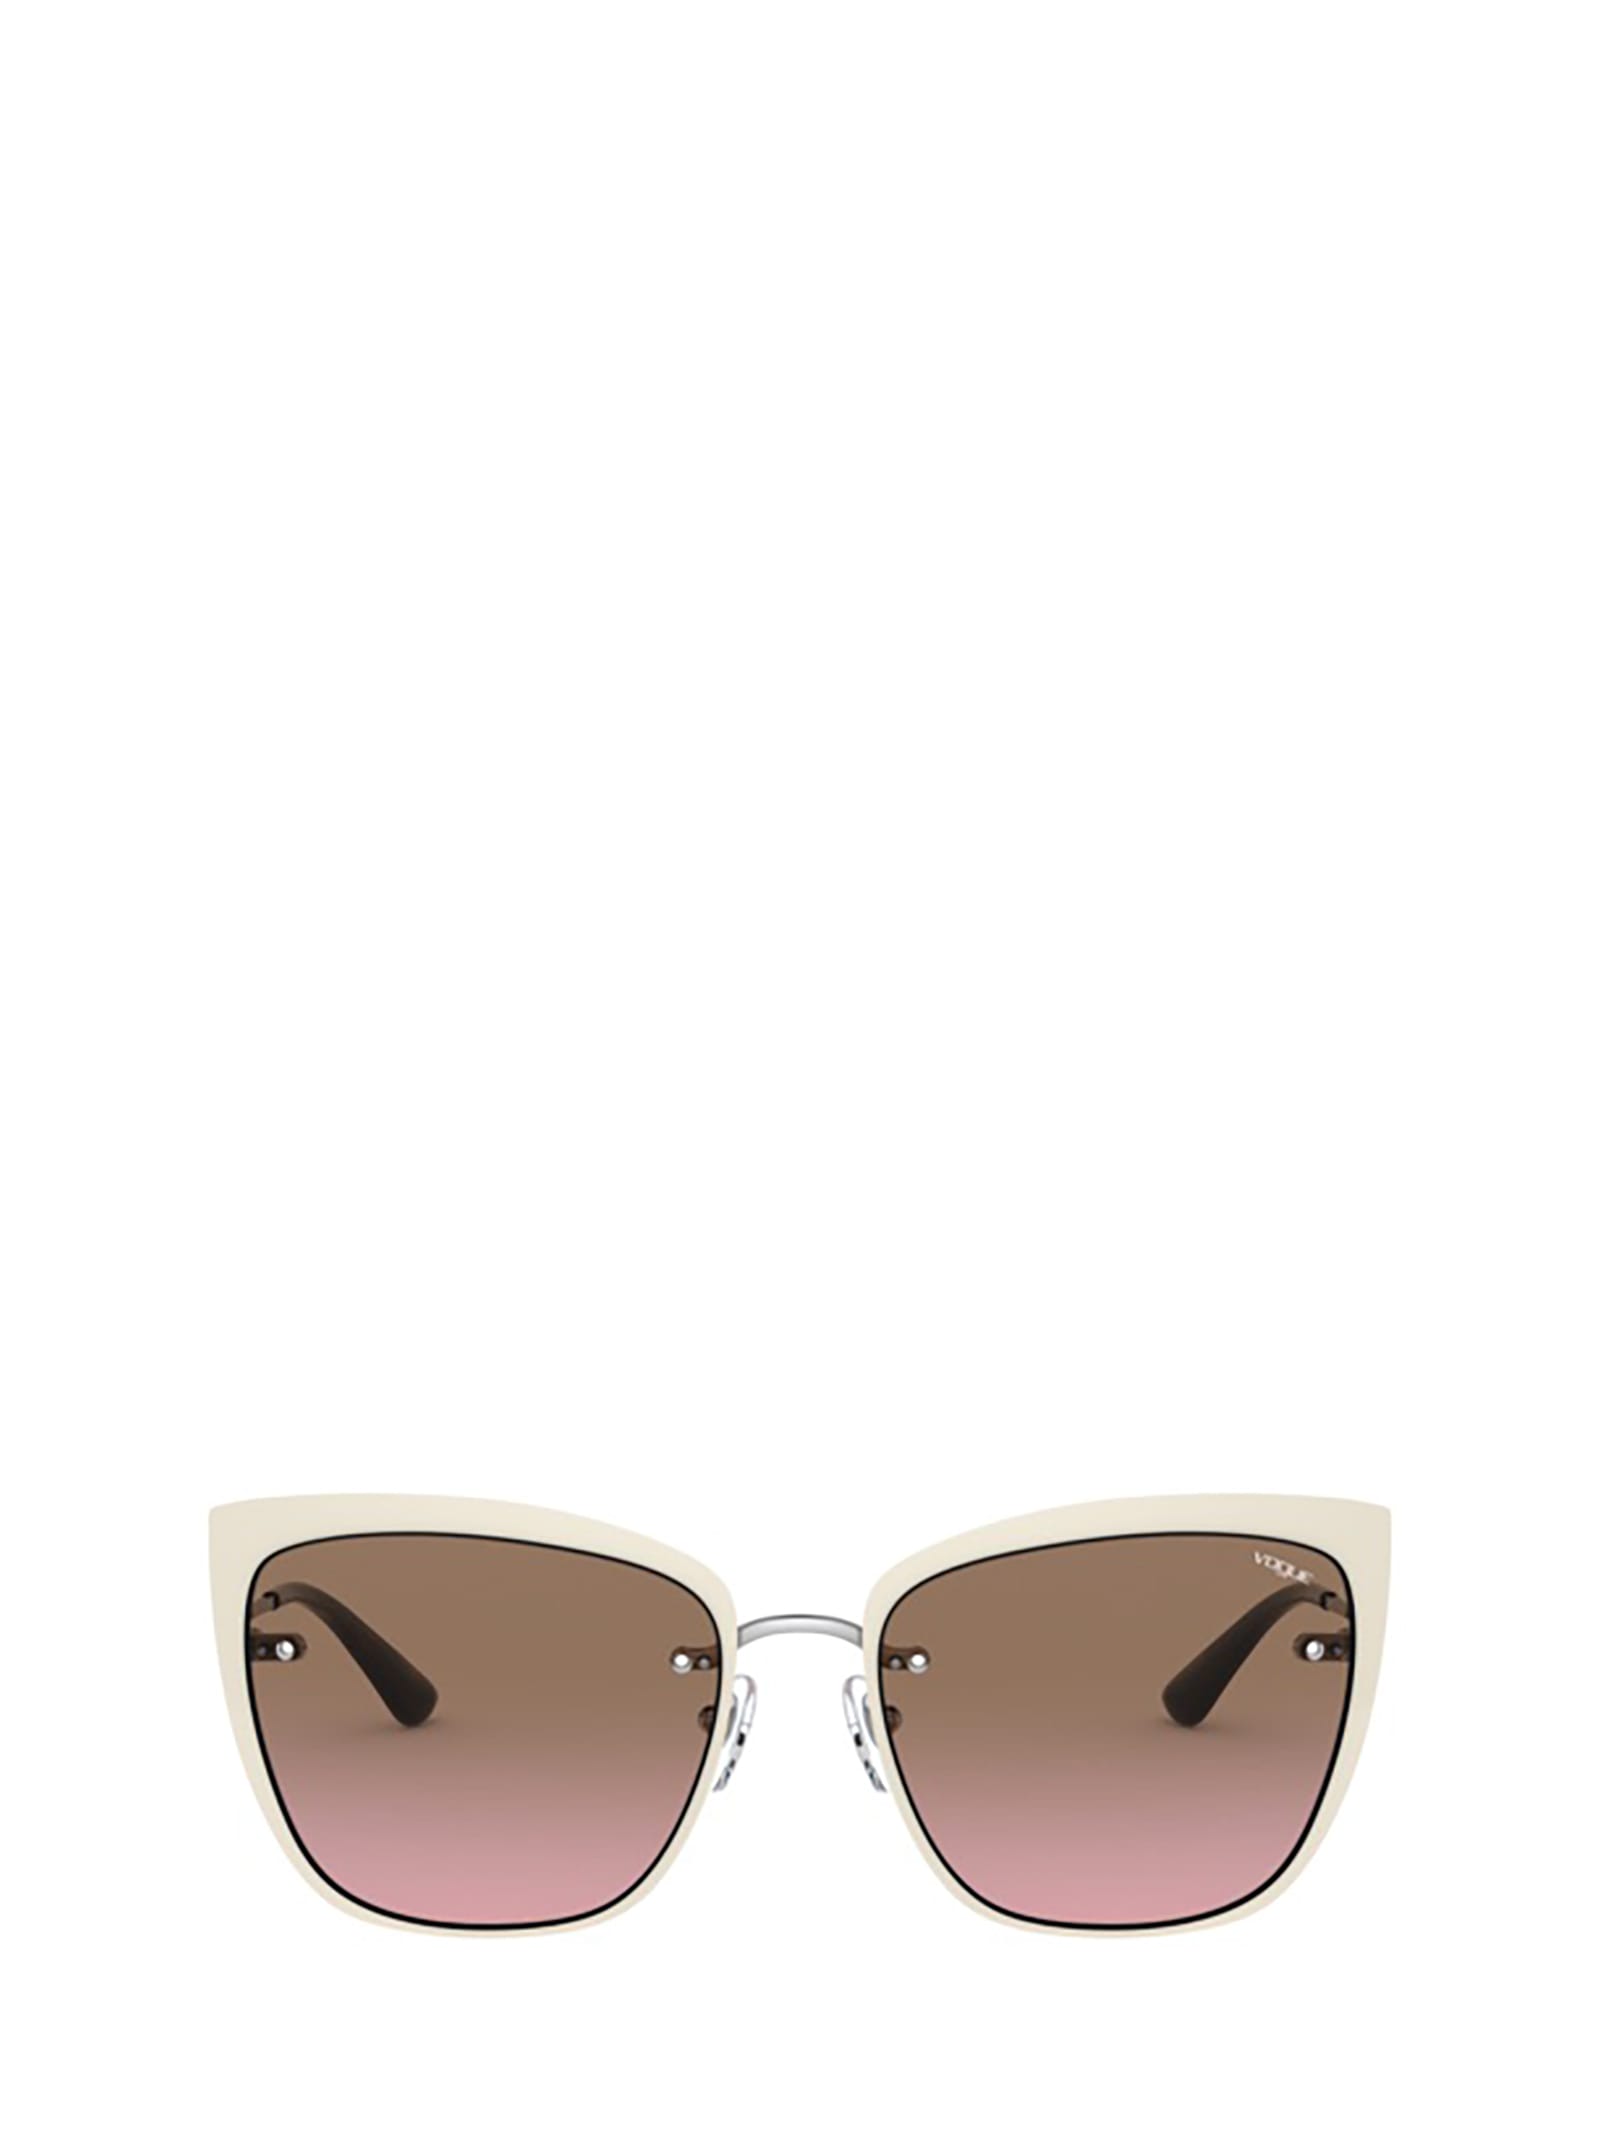 Vogue Eyewear Vogue Vo4158s Top Beige / Silver Sunglasses